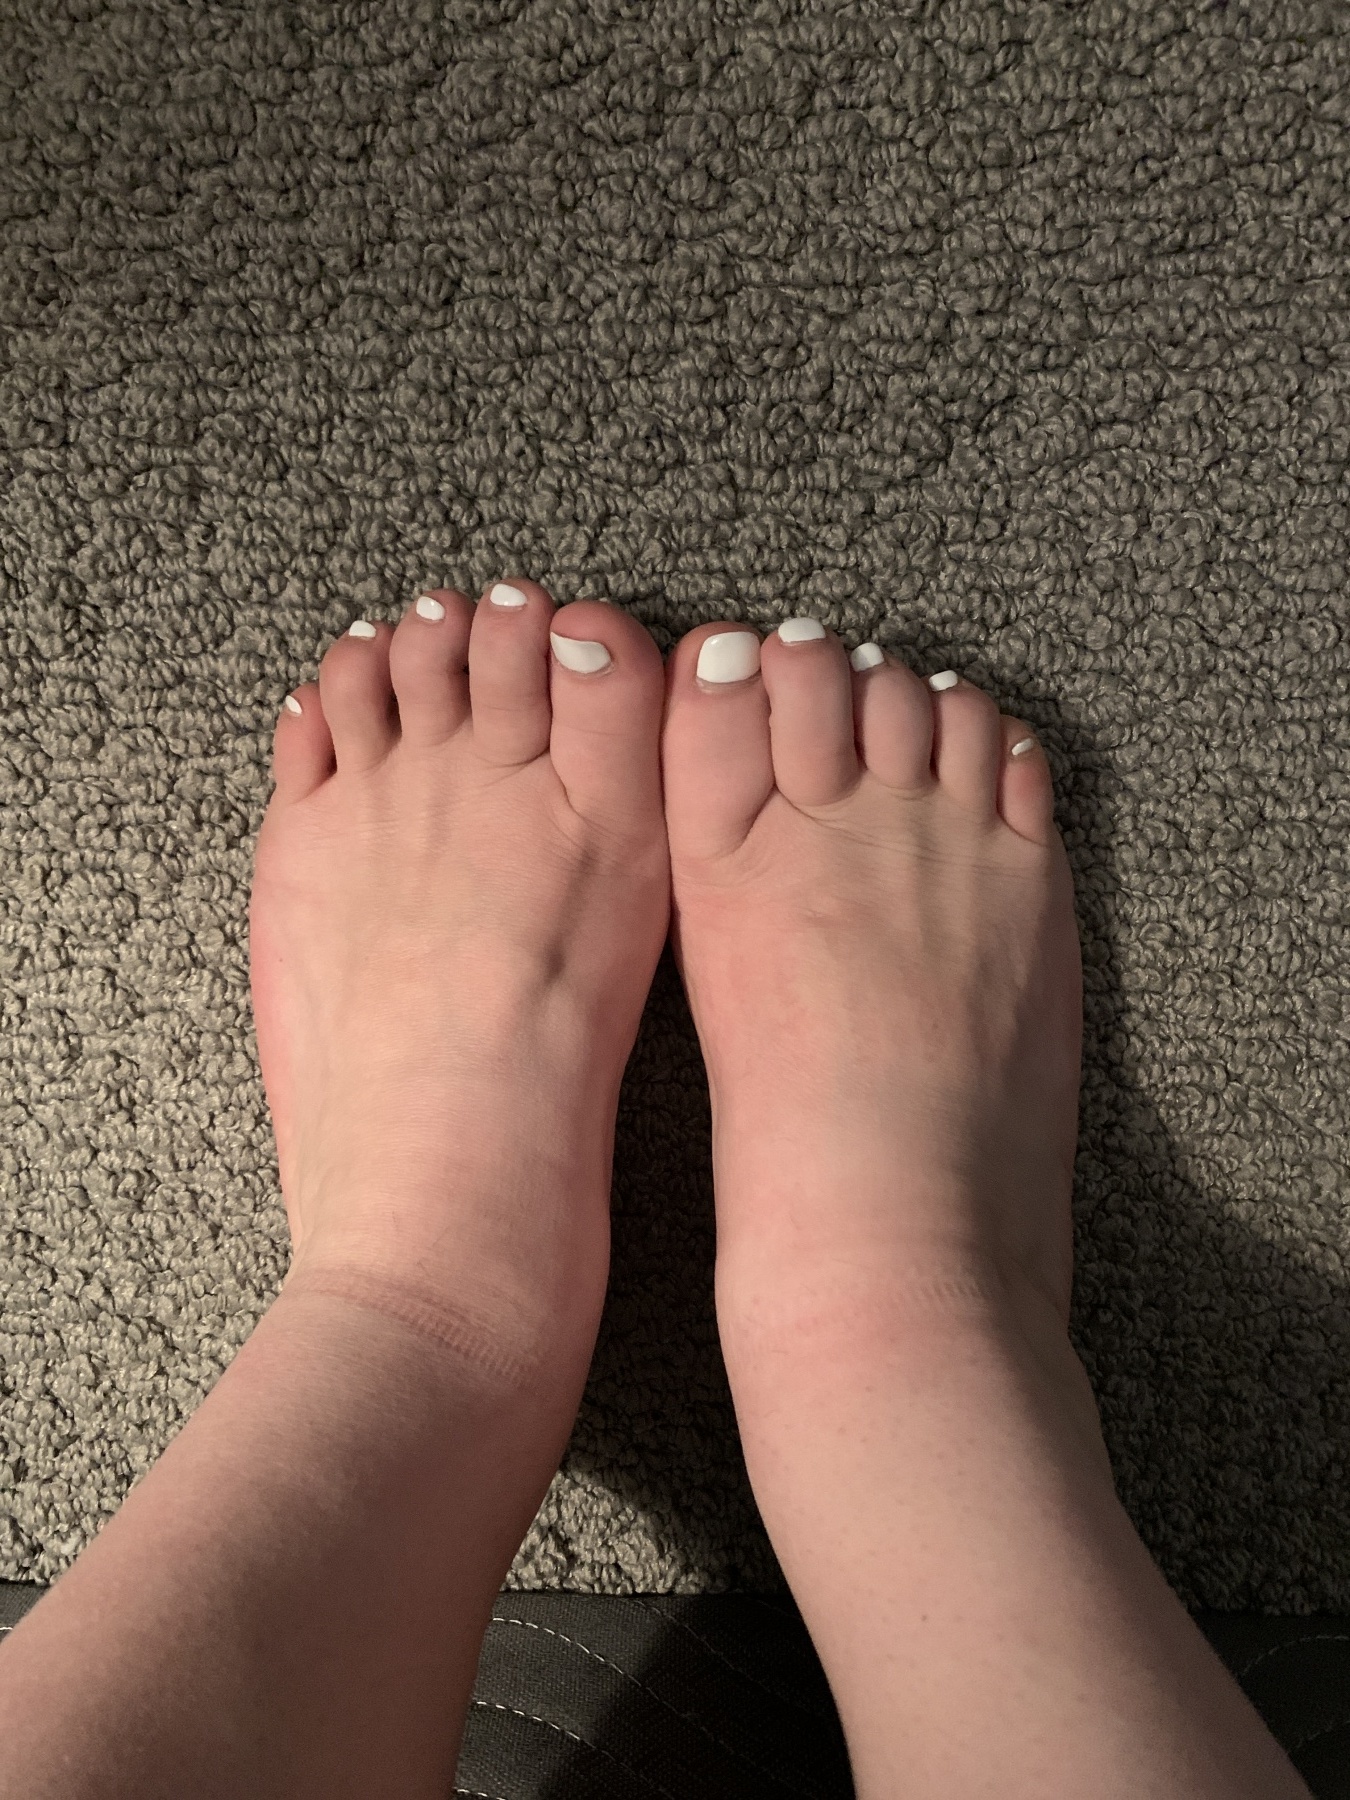 Feet pics white toes